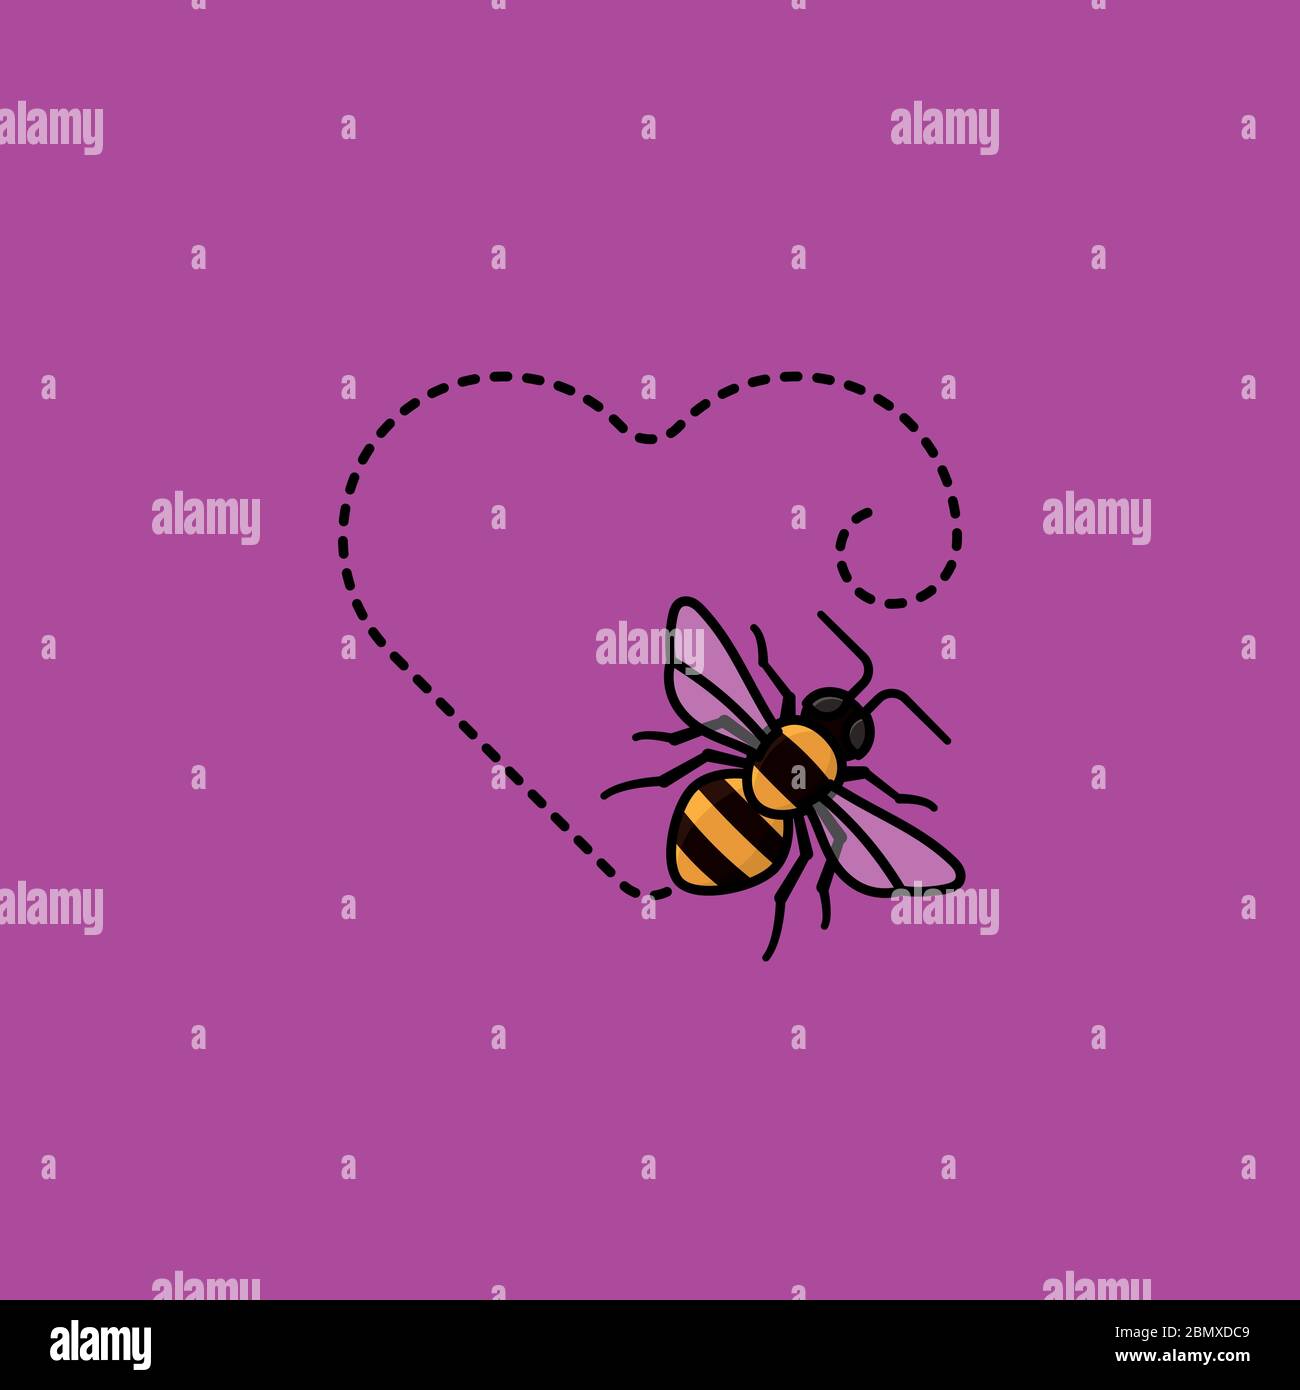 Abeja de miel moviéndose en una ilustración del vector de la trayectoria en forma de corazón para el día Mundial de la abeja el 19 de mayo. Símbolo útil de color de insecto. Ilustración del Vector